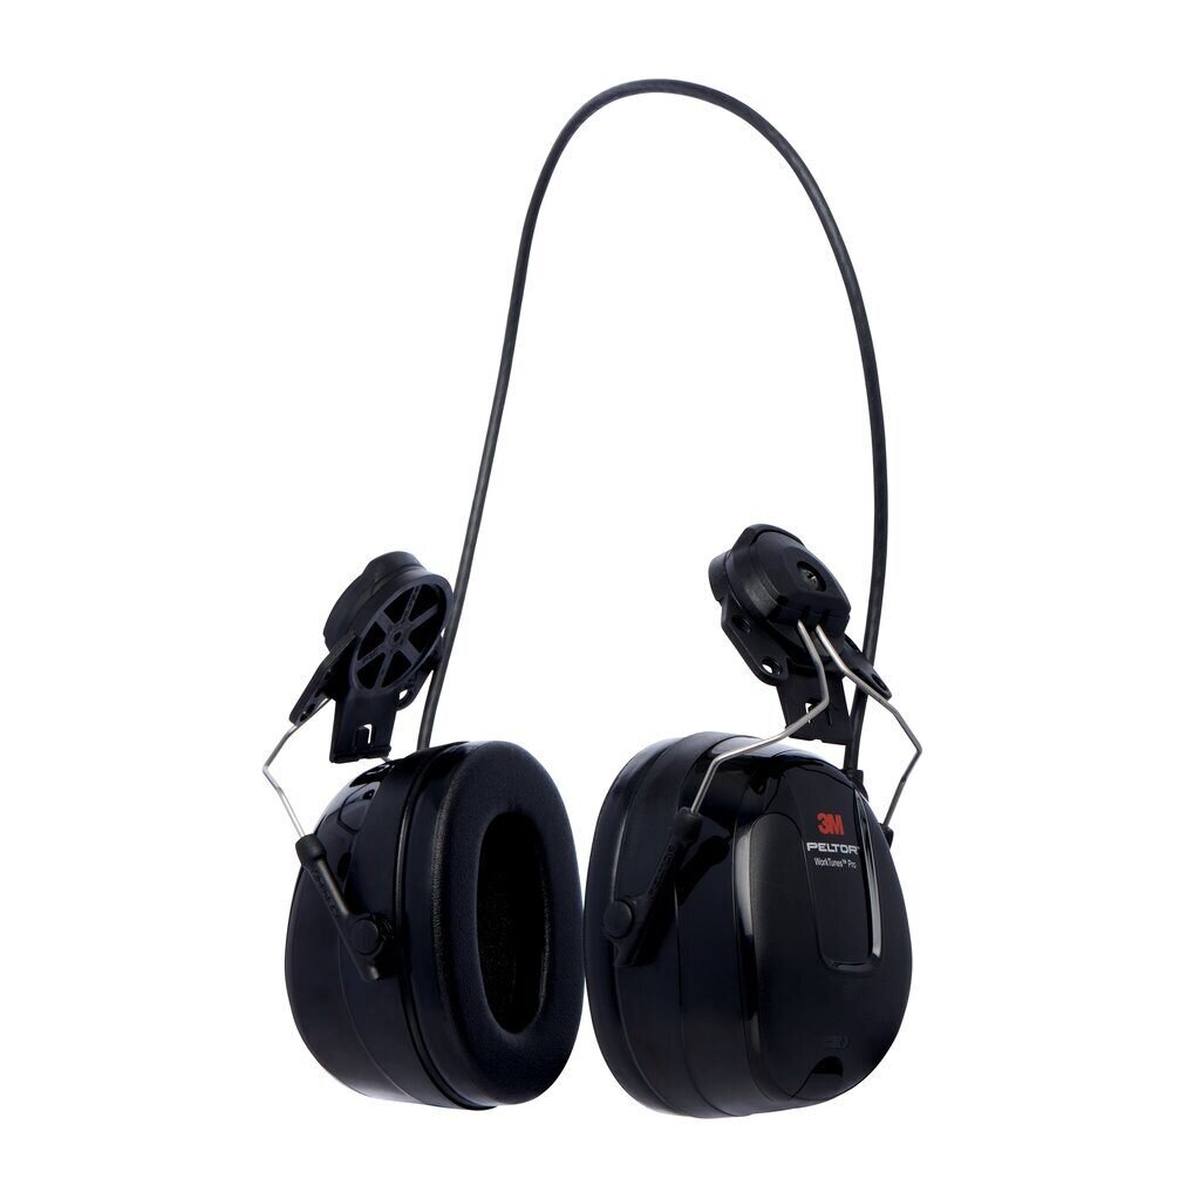 3M PELTOR WorkTunes Pro Auriculares de protección auditiva con radio FM, fijación al casco, negro